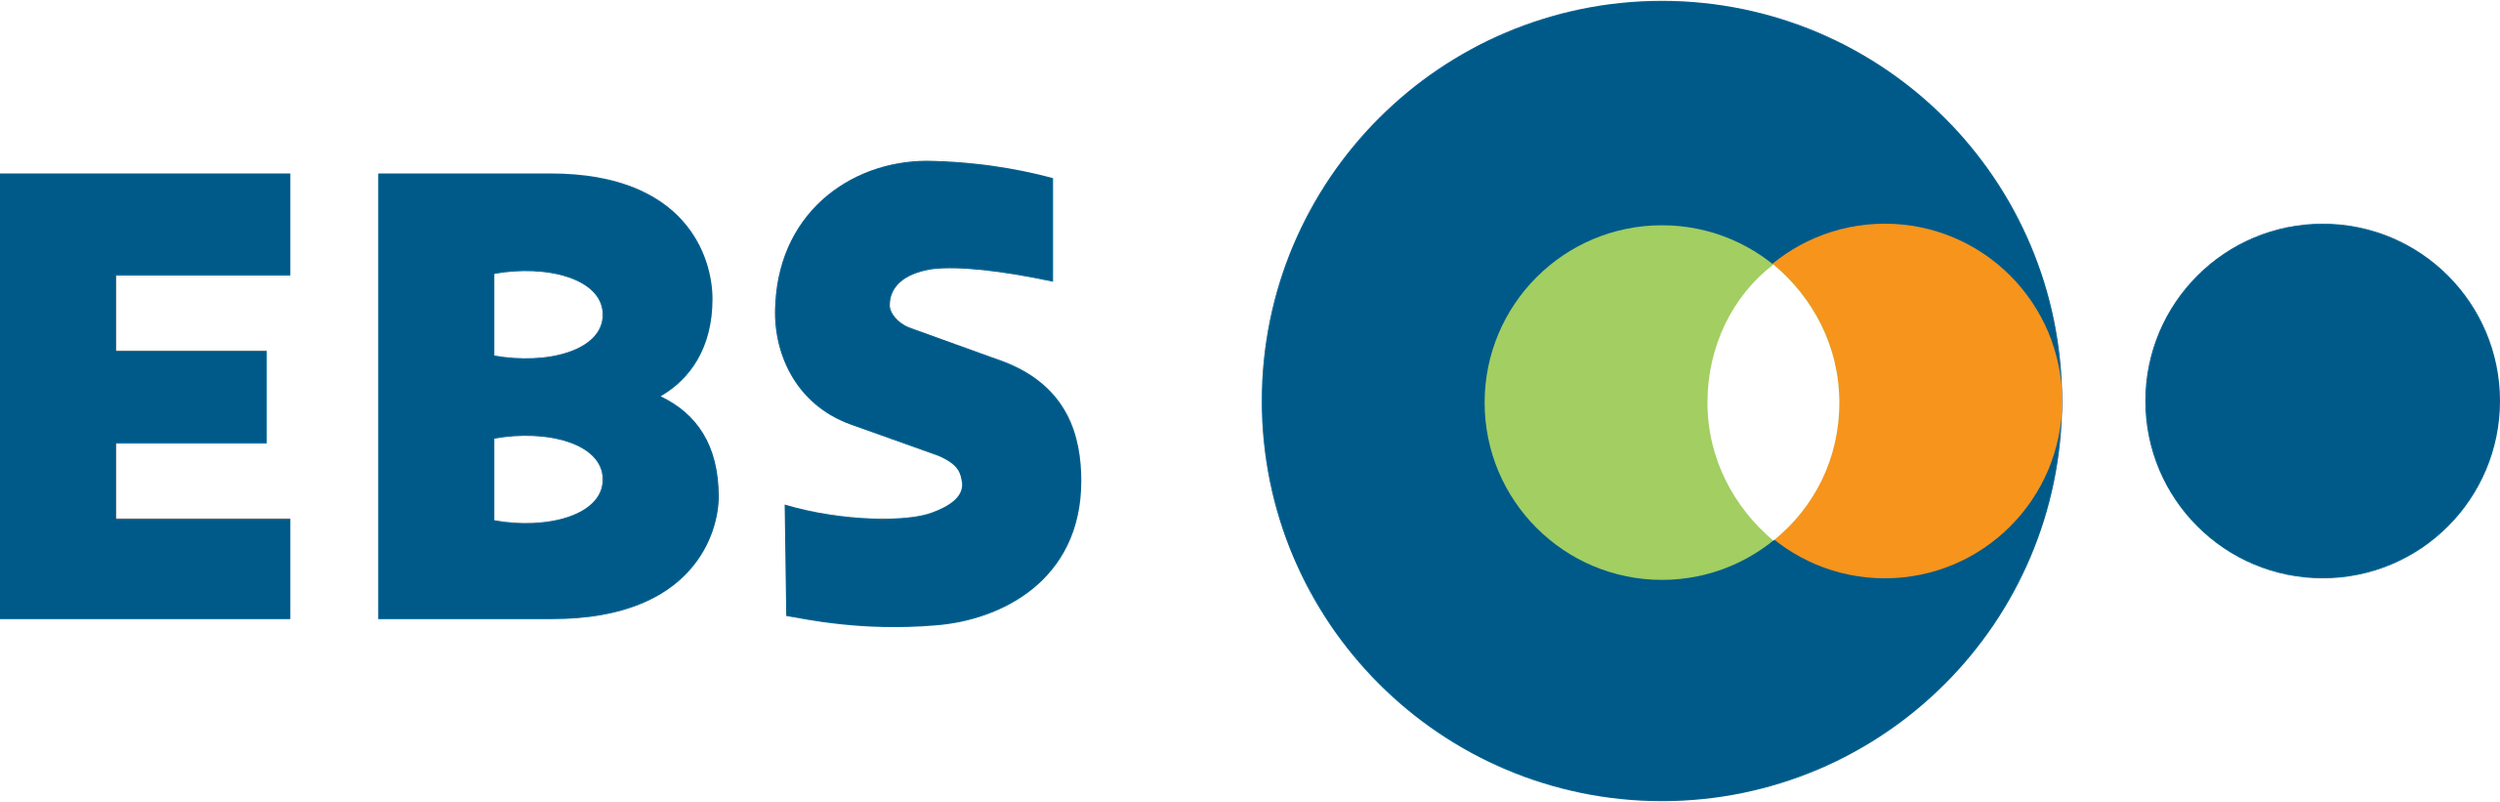 EBS_Logo.svg.png